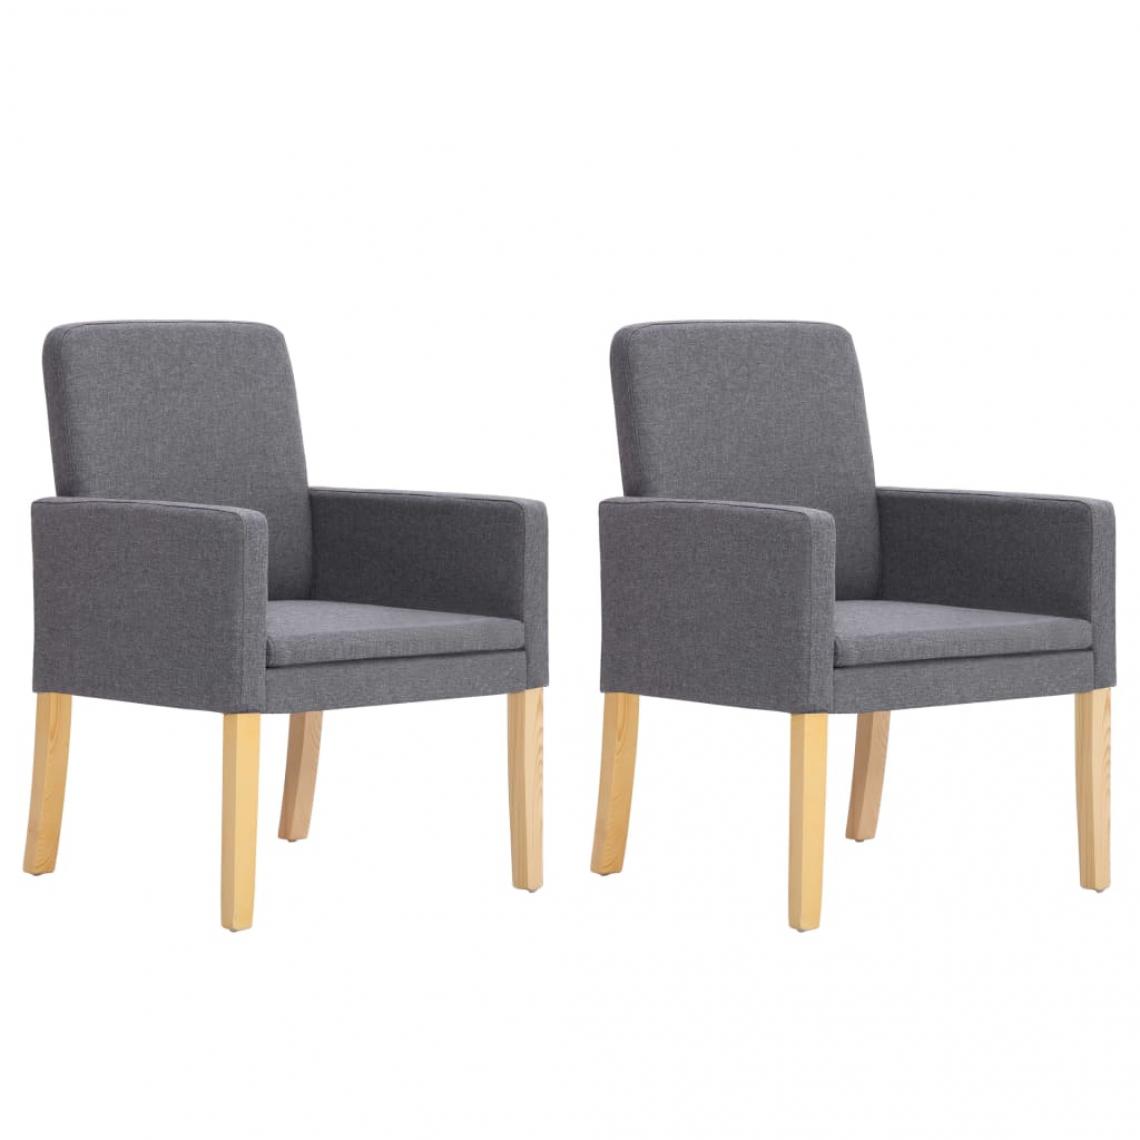 Decoshop26 - Lot de 2 chaises de salle à manger cuisine design moderne tissu gris clair CDS020489 - Chaises